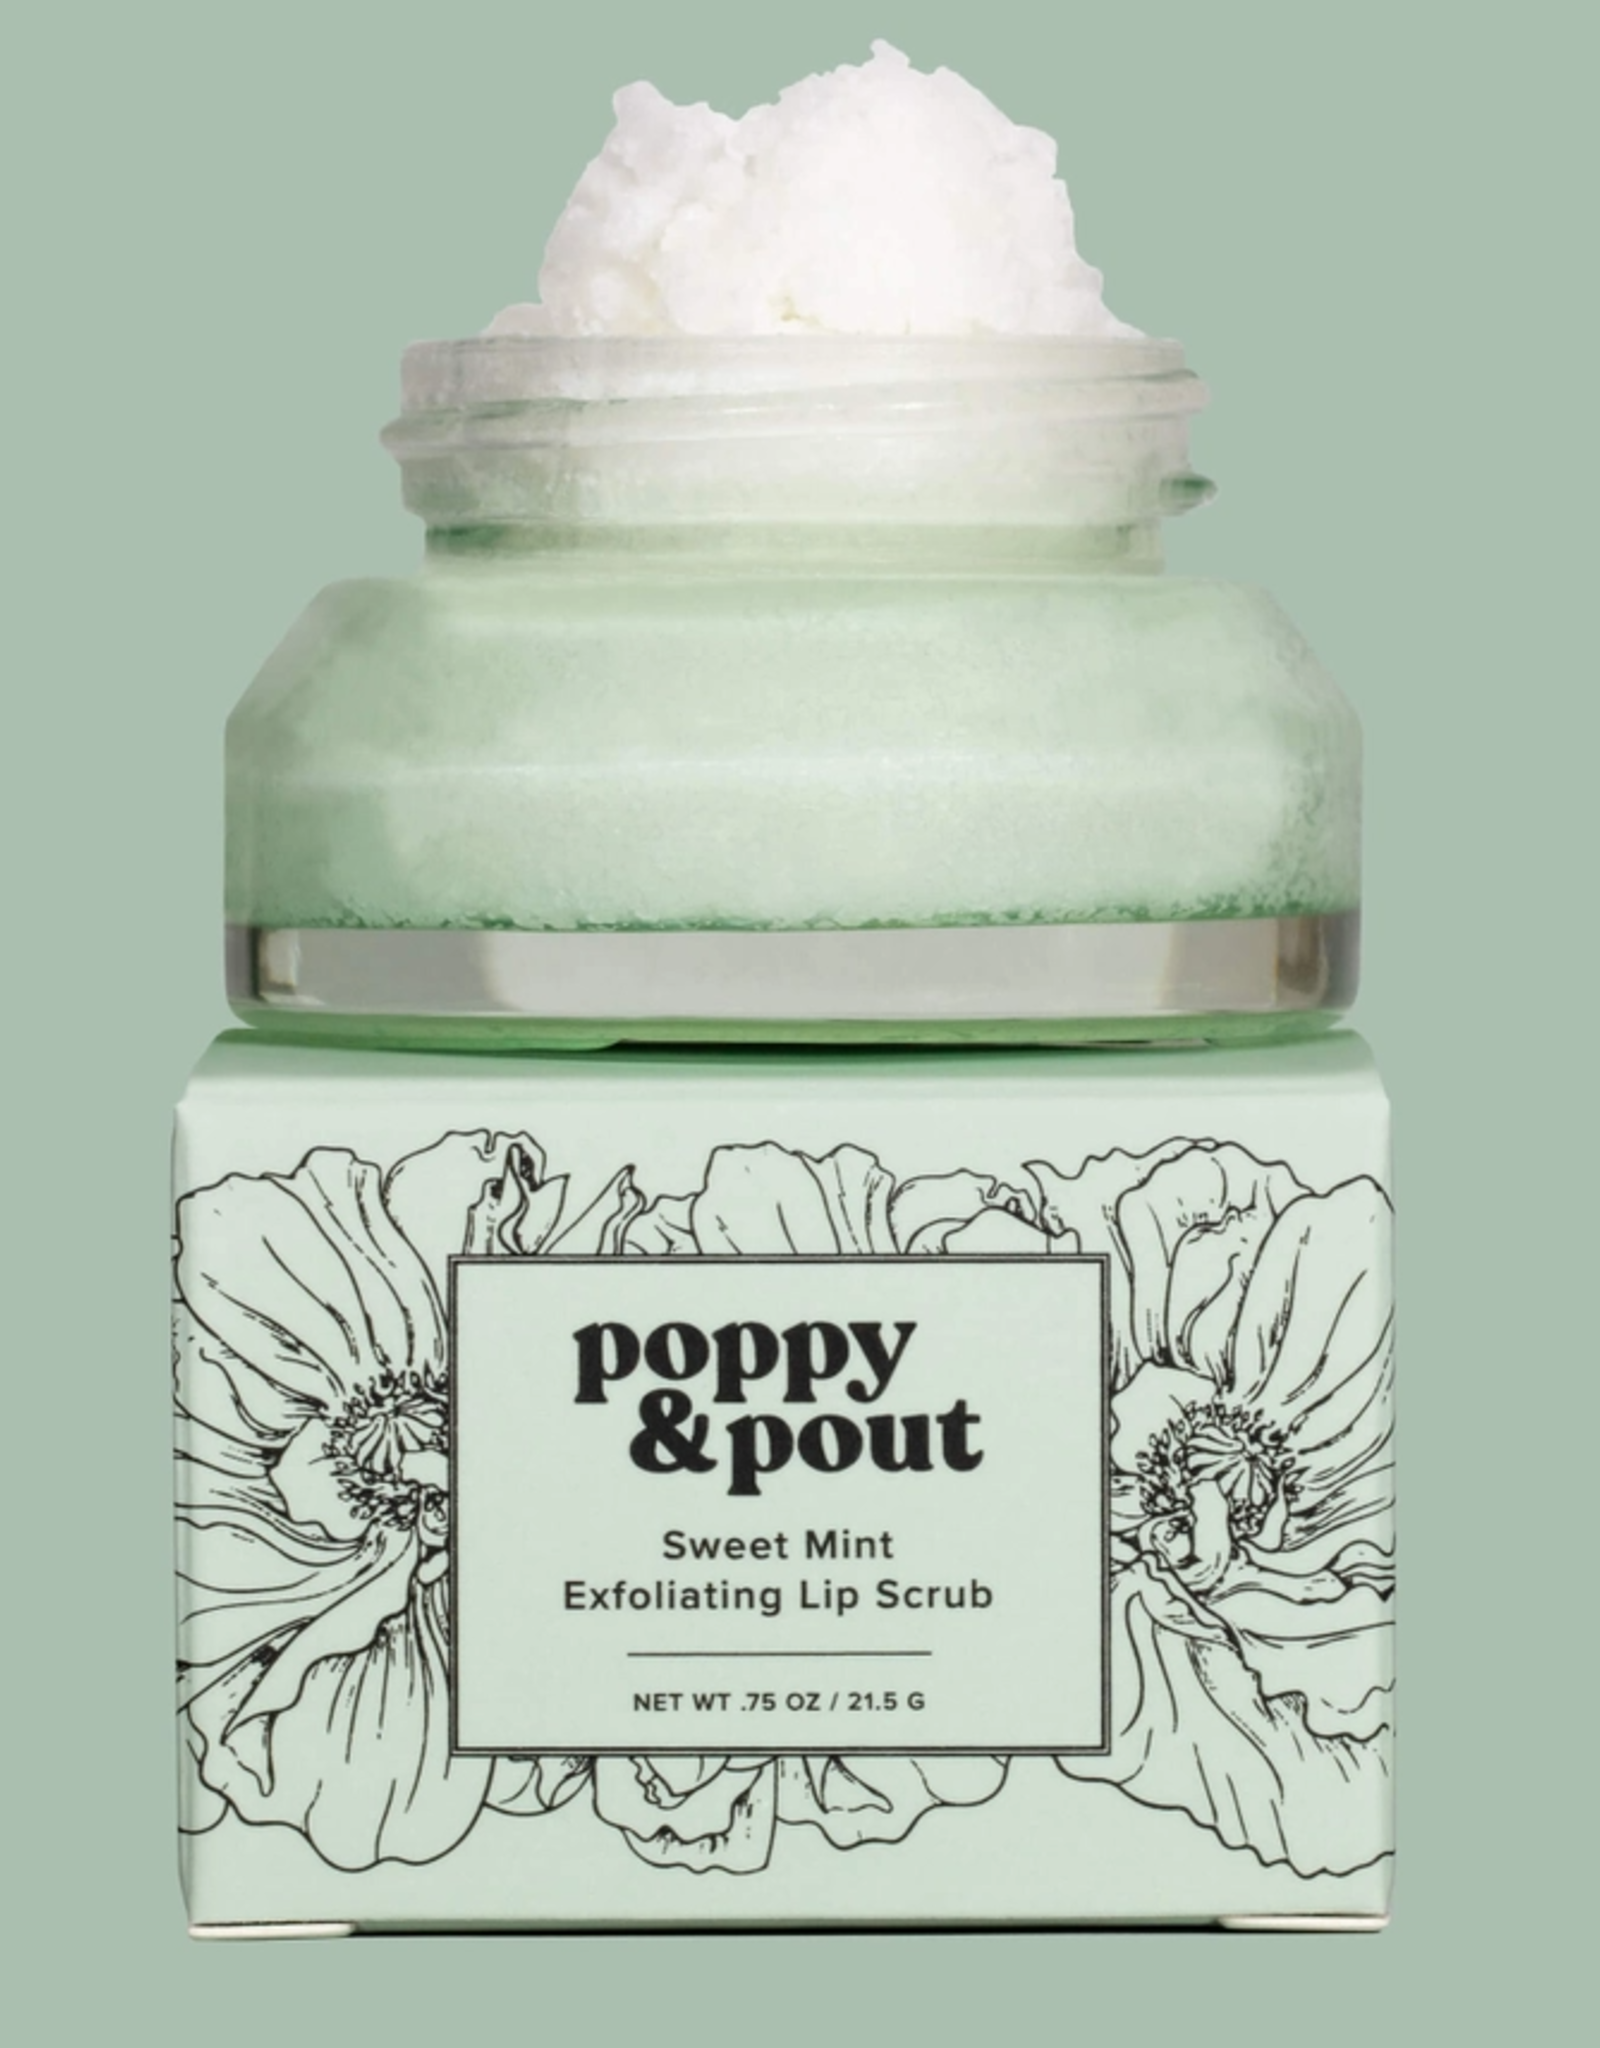 Poppy & Pout Lip Scrub, Sweet Mint